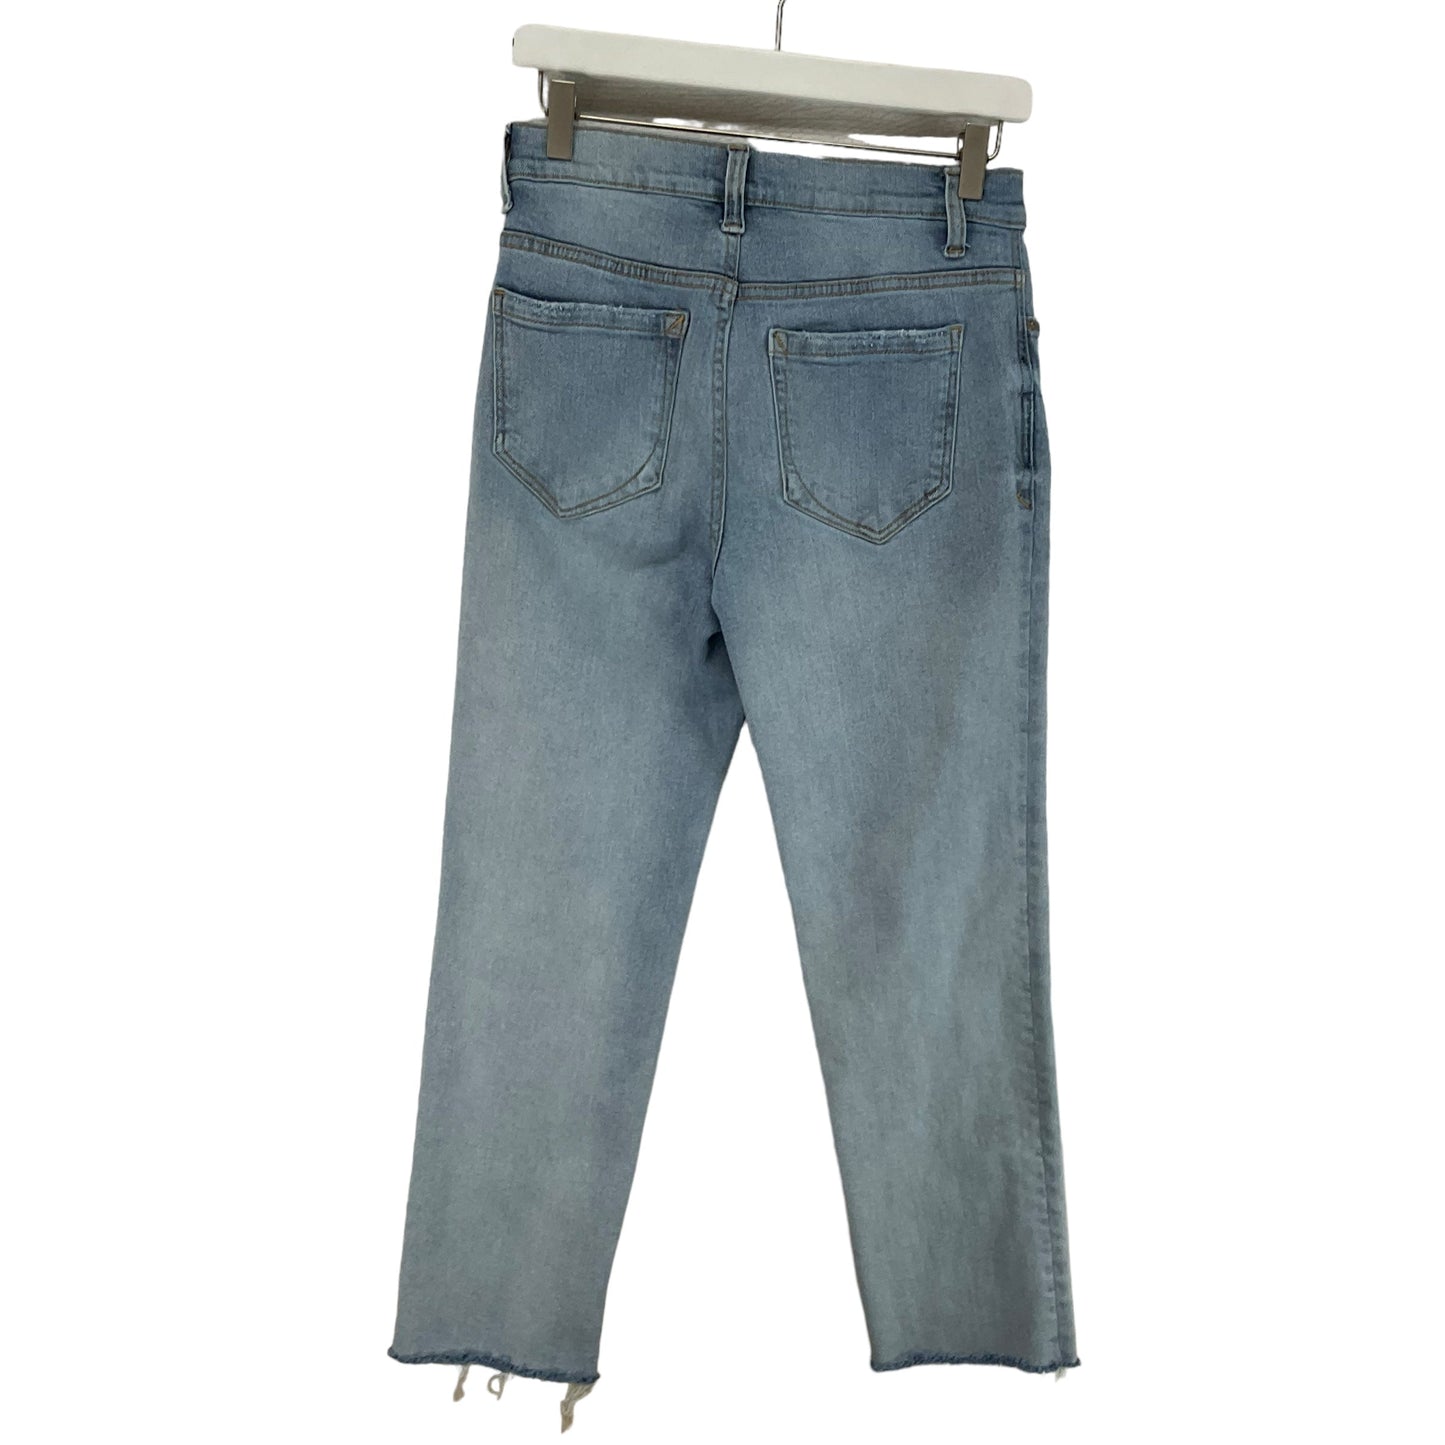 Blue Denim Jeans Straight Kensie, Size 8